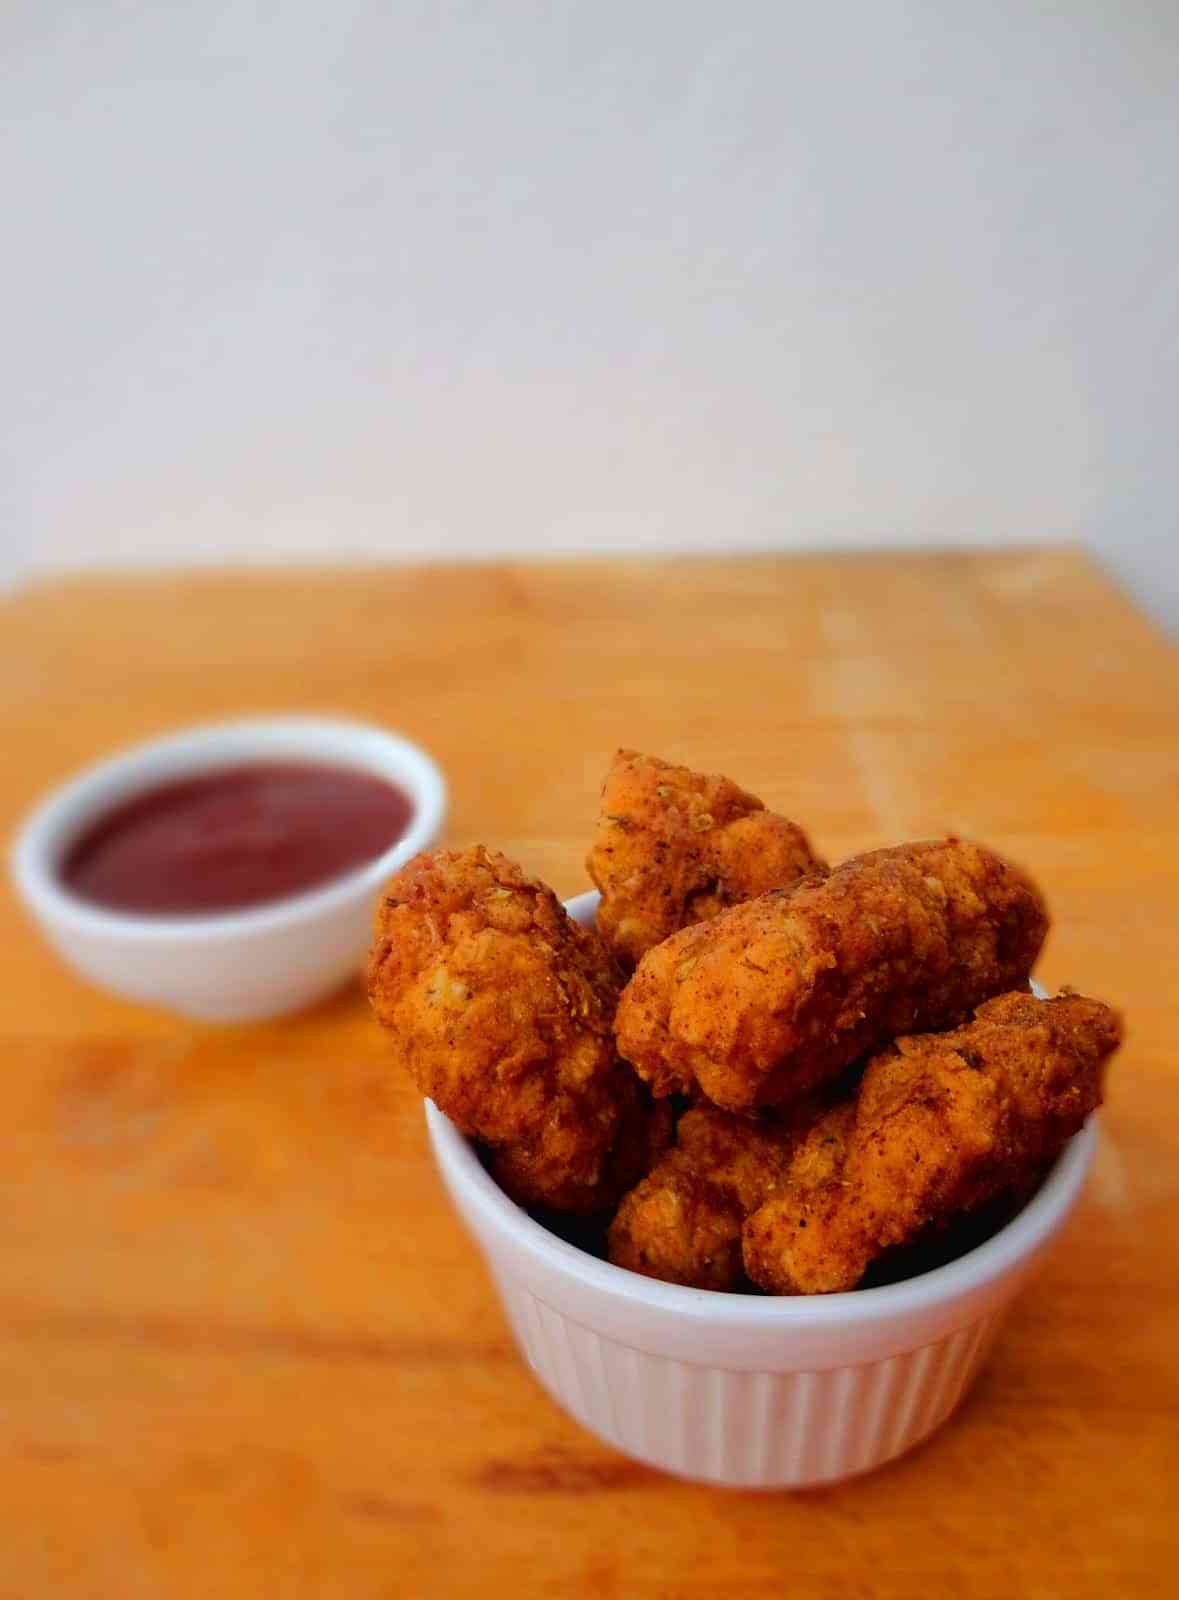 Cómo preparar unos deliciosos nuggets de pollo - Solo Recetas, el blog